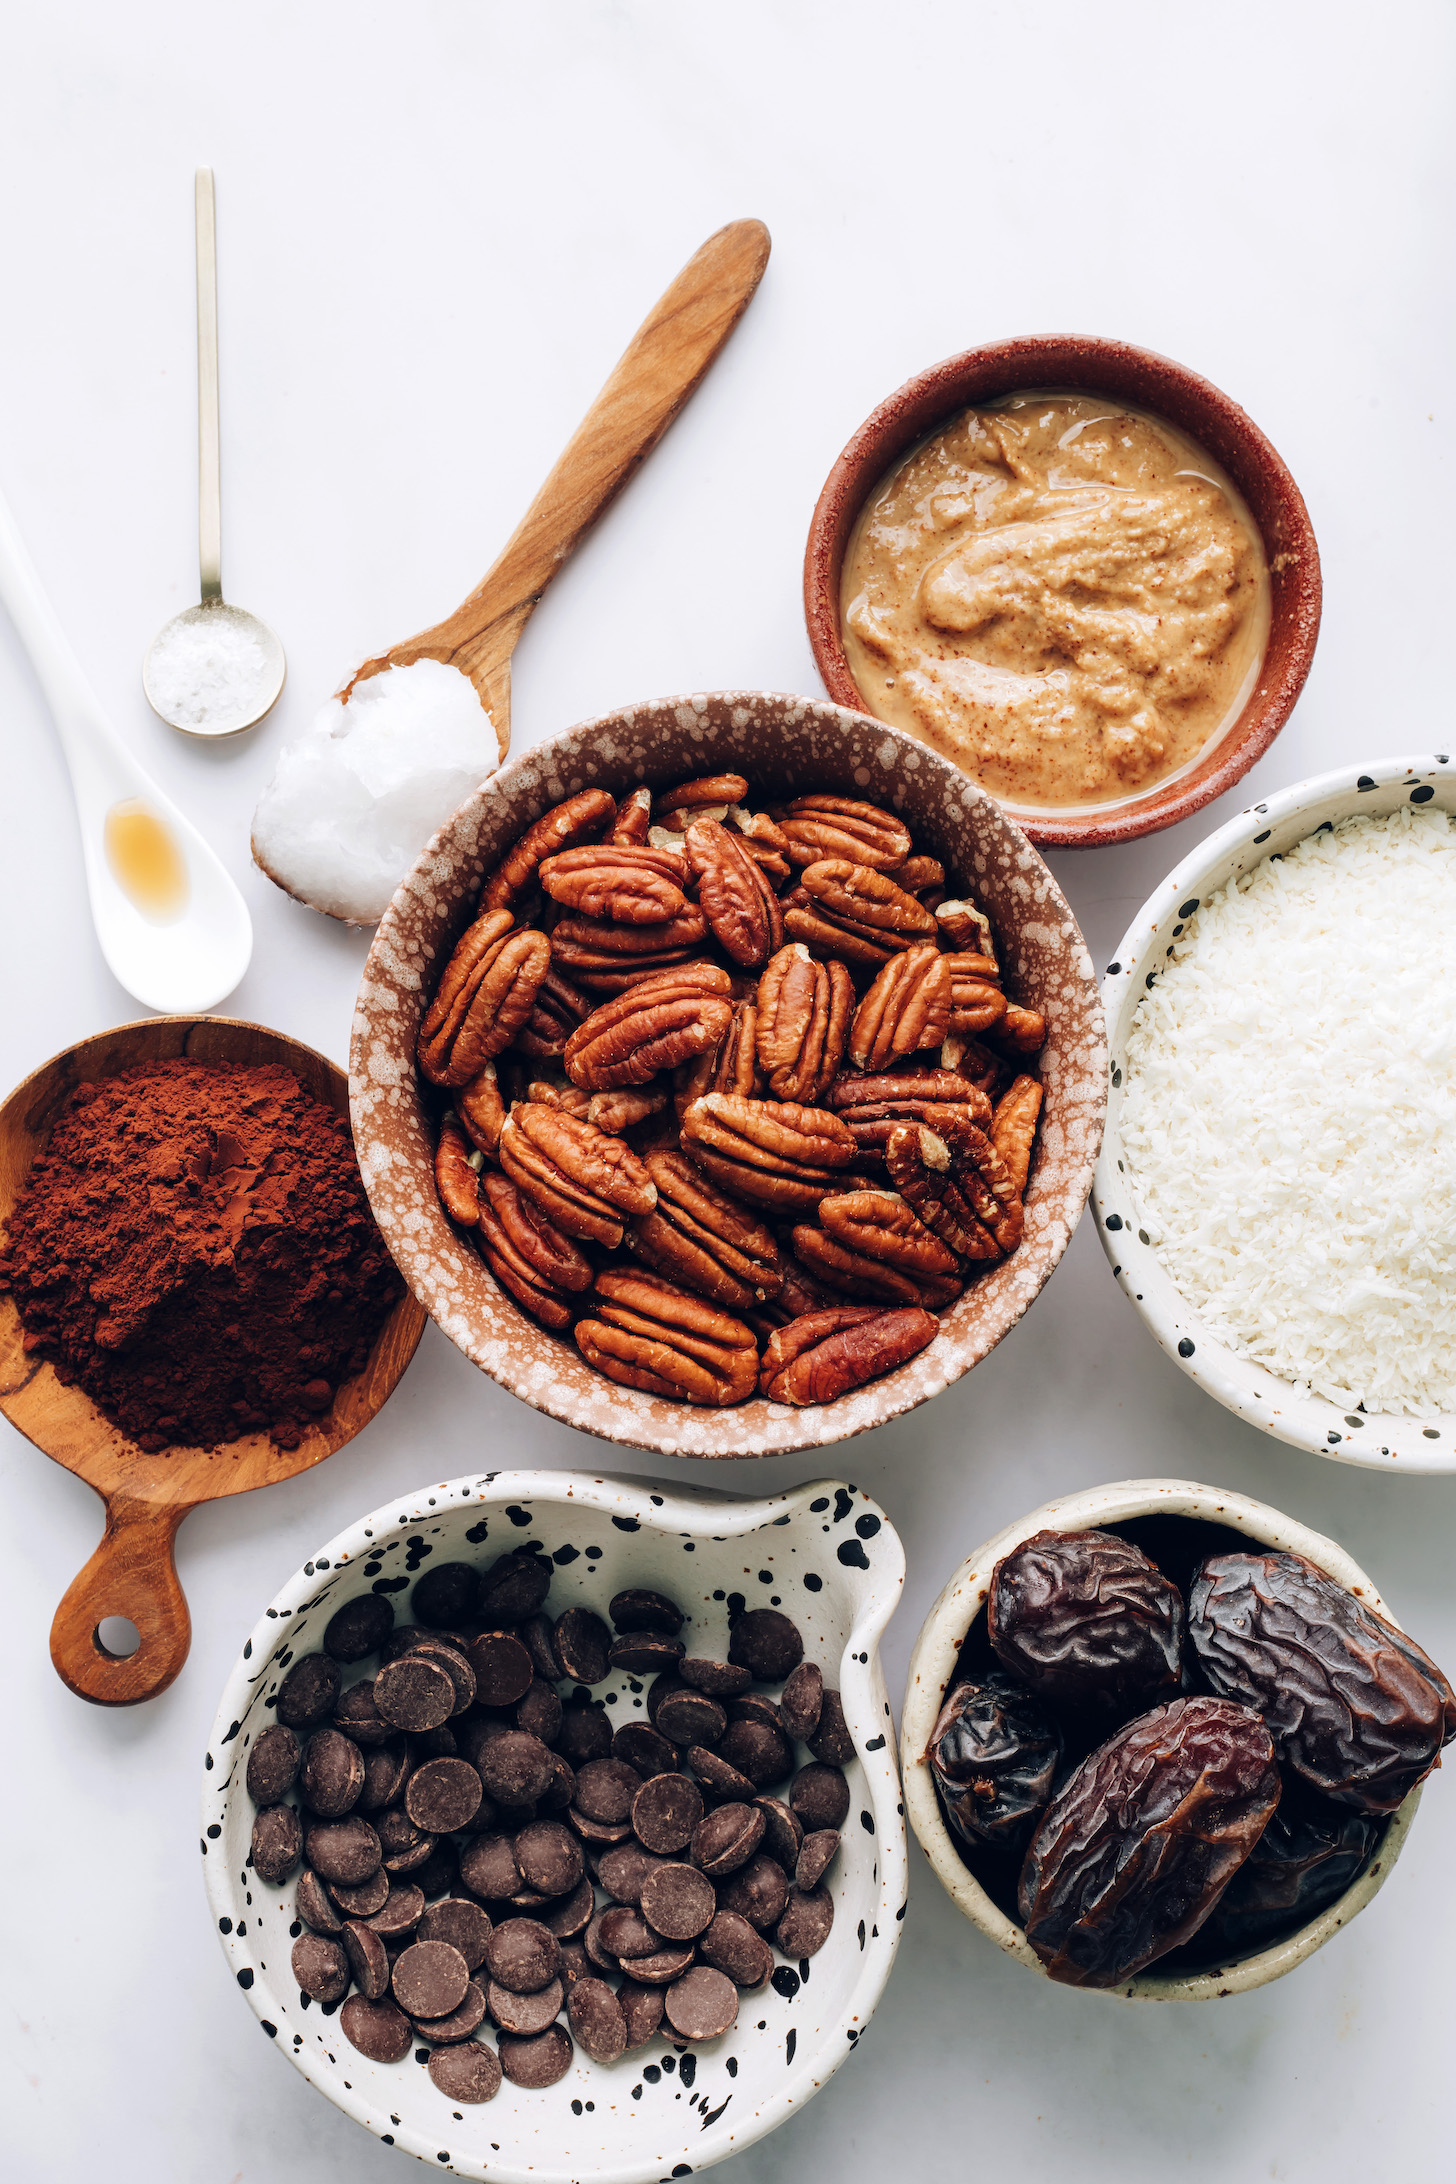 Vanilya, tuz, hindistancevizi yağı, badem yağı, kakao tozu, cevizler, hindistancevizi, hurma ve çikolata parçaları